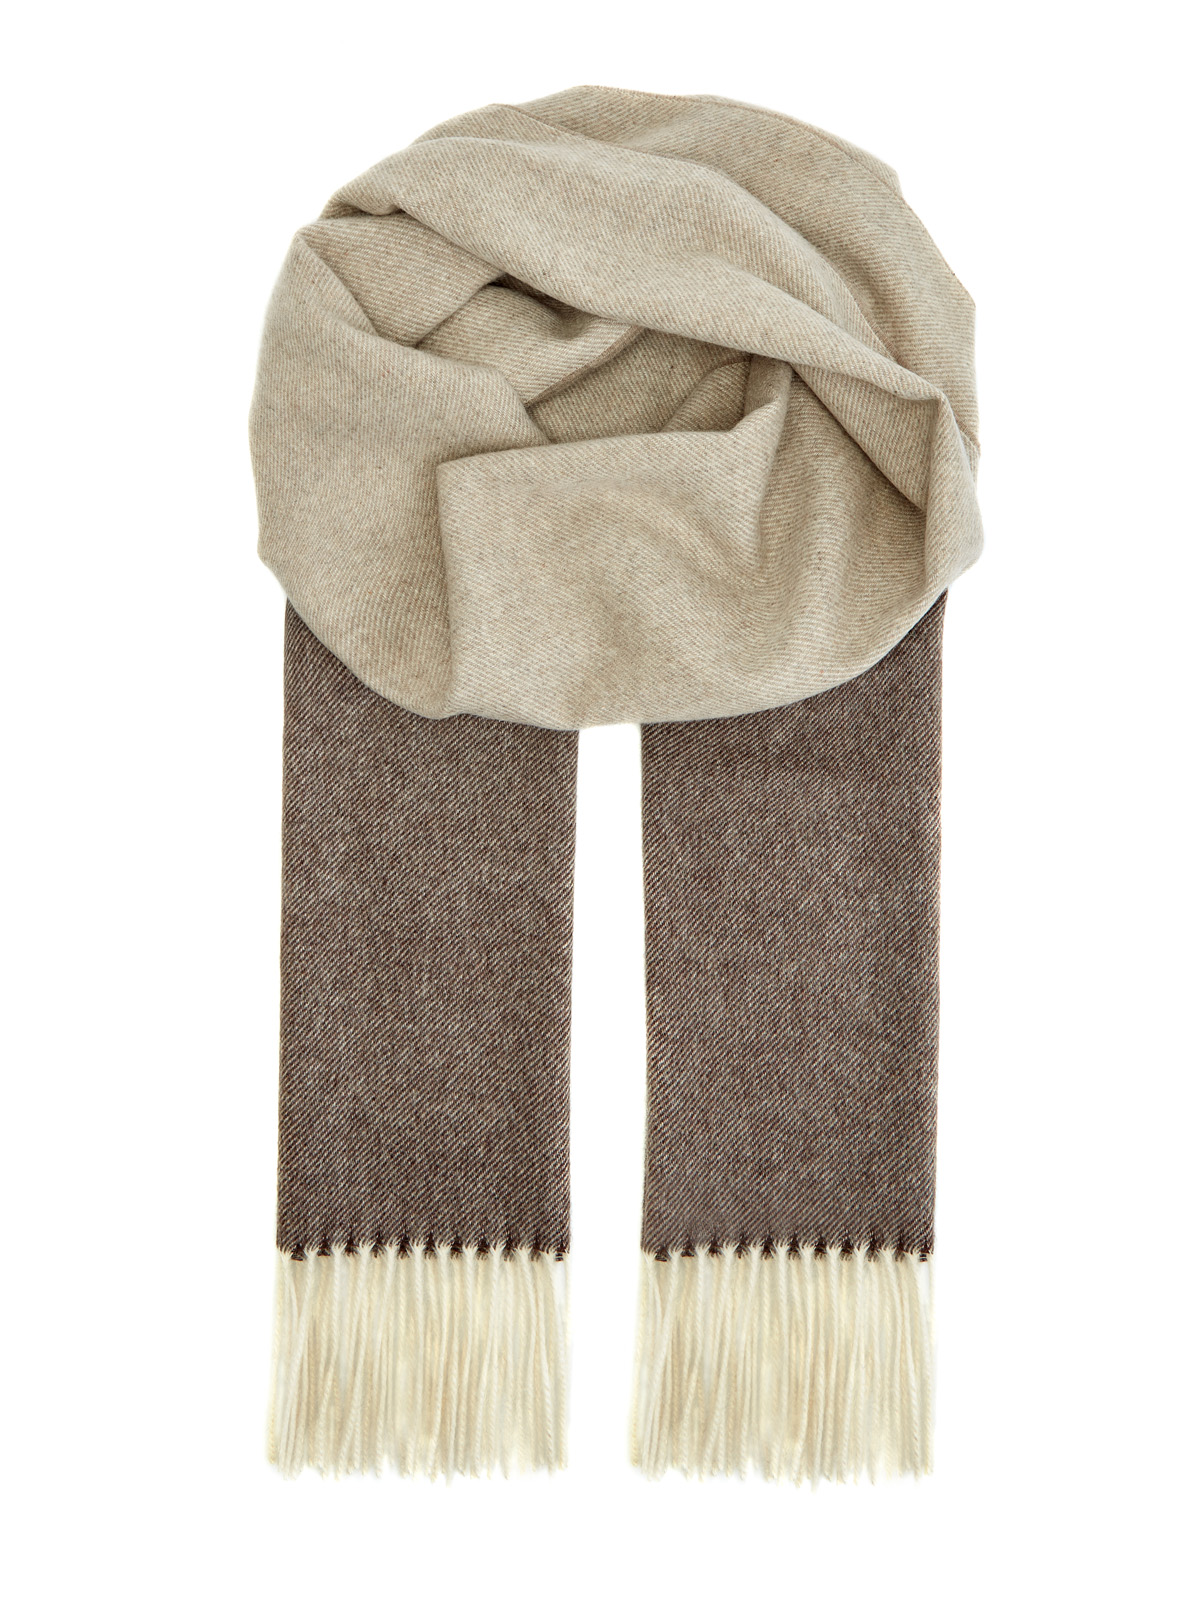 Кашемировый шарф ручной работы в бежево-коричневой гамме BERTOLO CASHMERE, цвет коричневый, размер 58